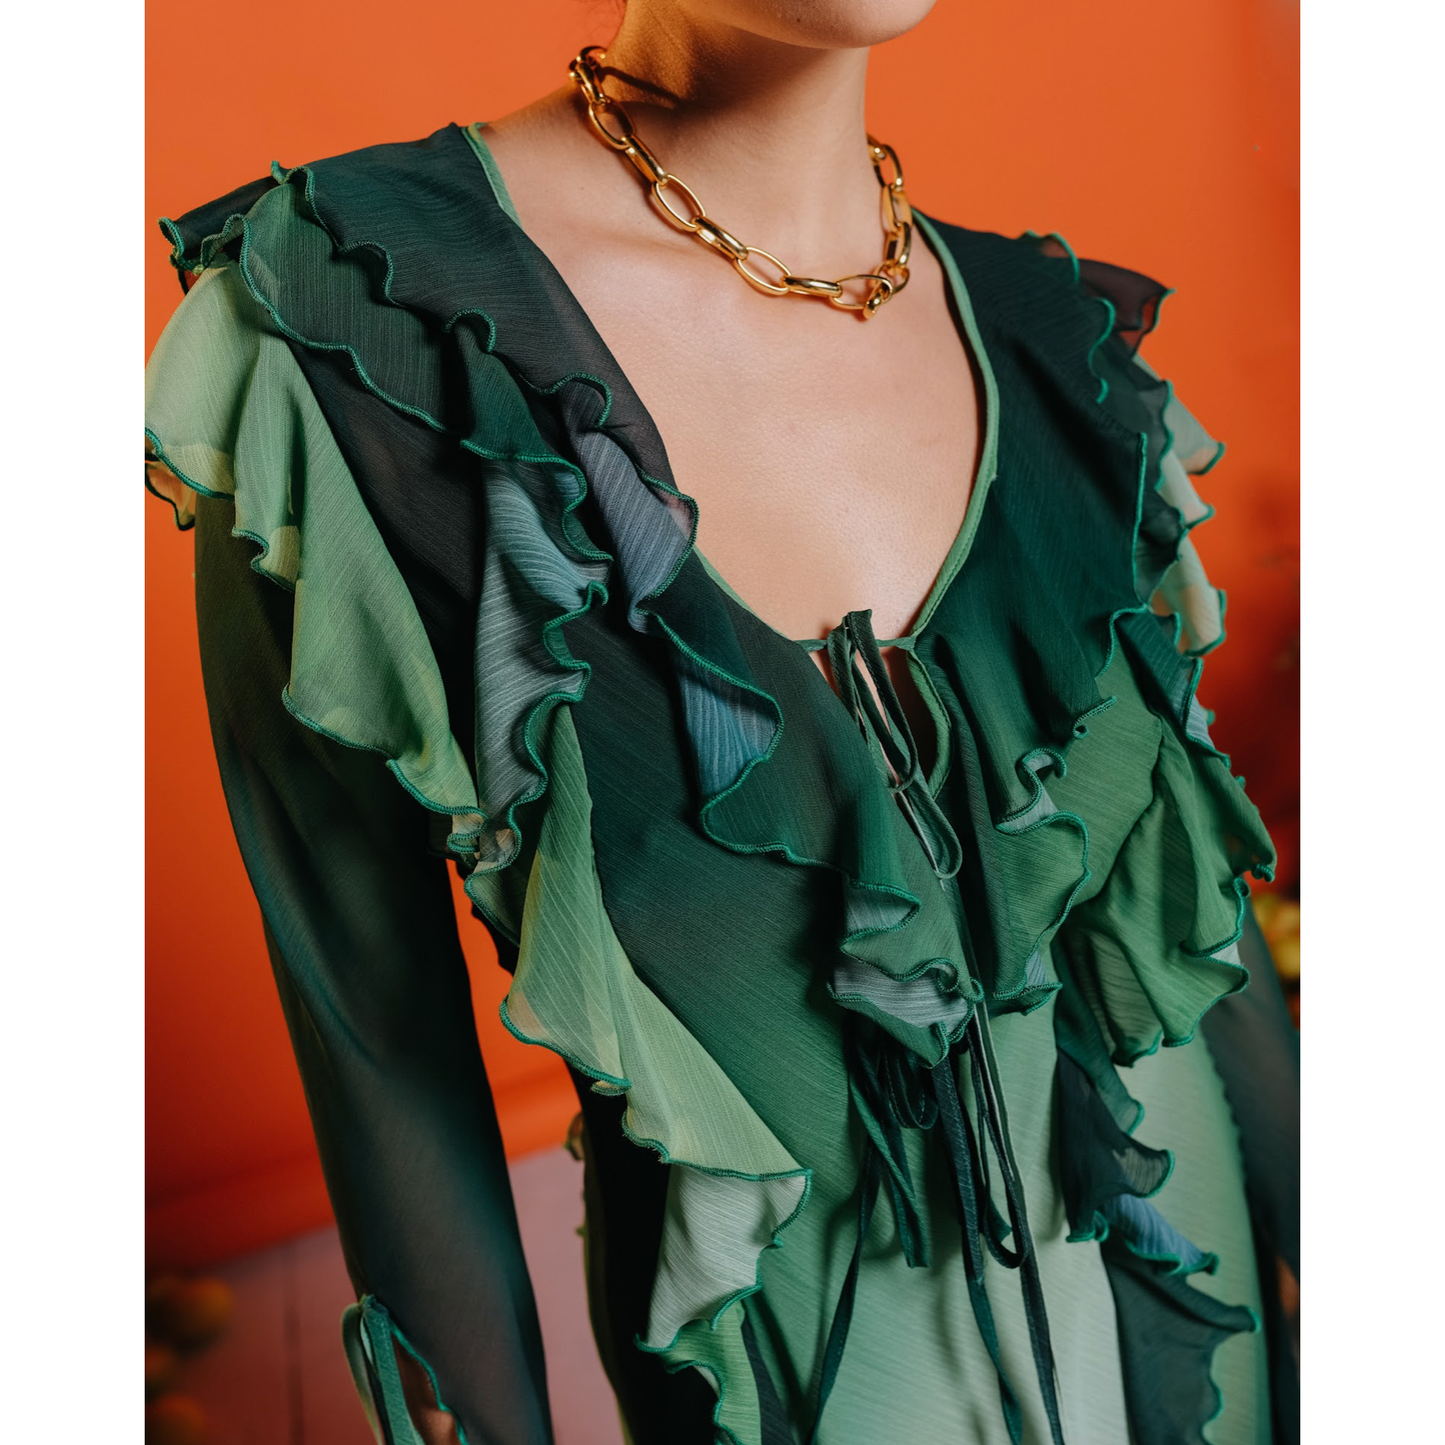 Maxi Ruffle Sheer Dress in Green Ombre